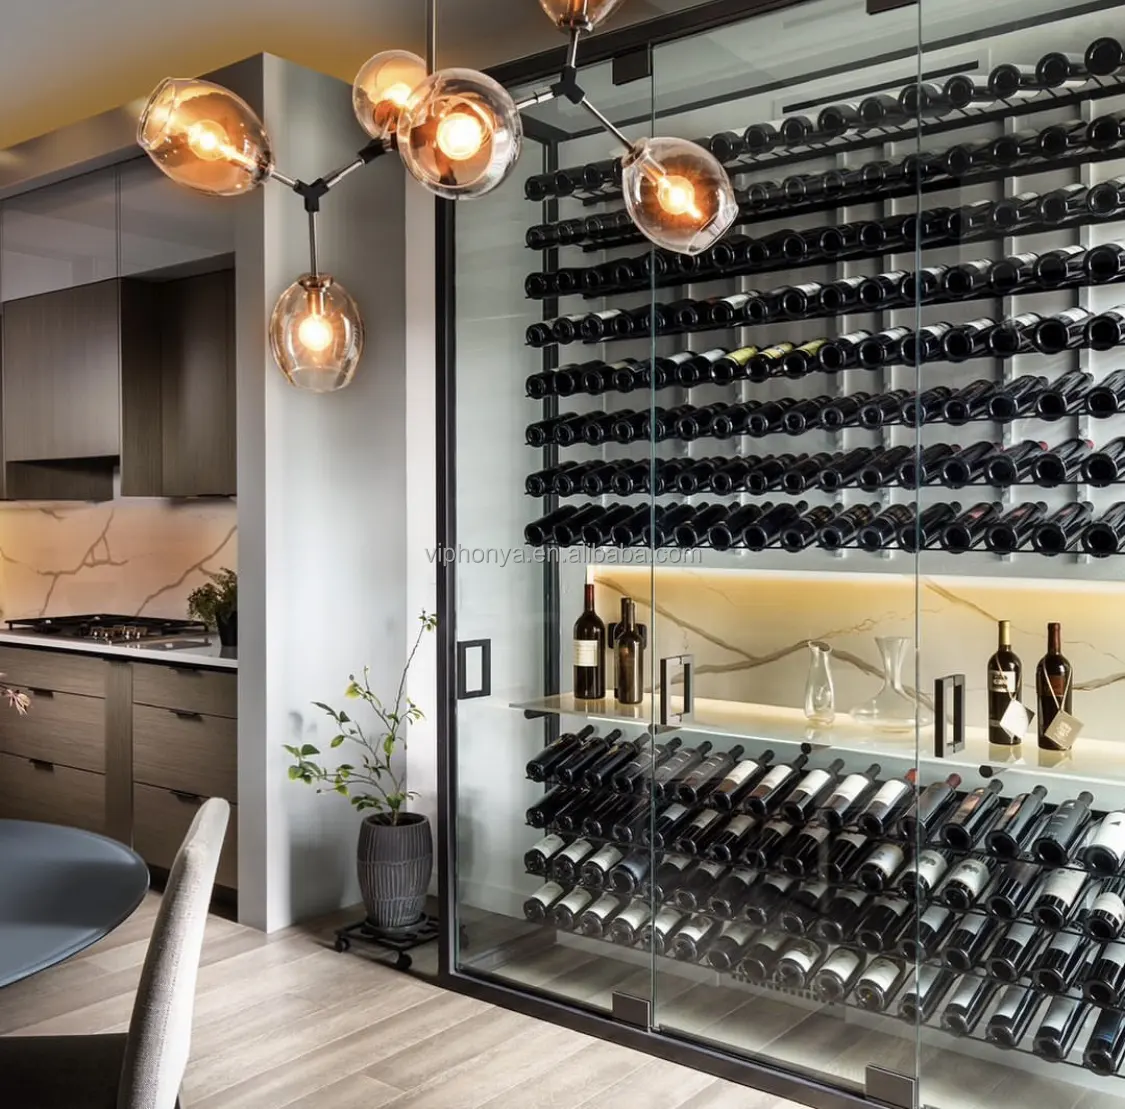 Ý nghĩa của thiết kế Giá rượu trong suốt cho Tủ rượu phòng khách với chốt Acrylic & hầm rượu thiết kế mới lạ bằng kim loại